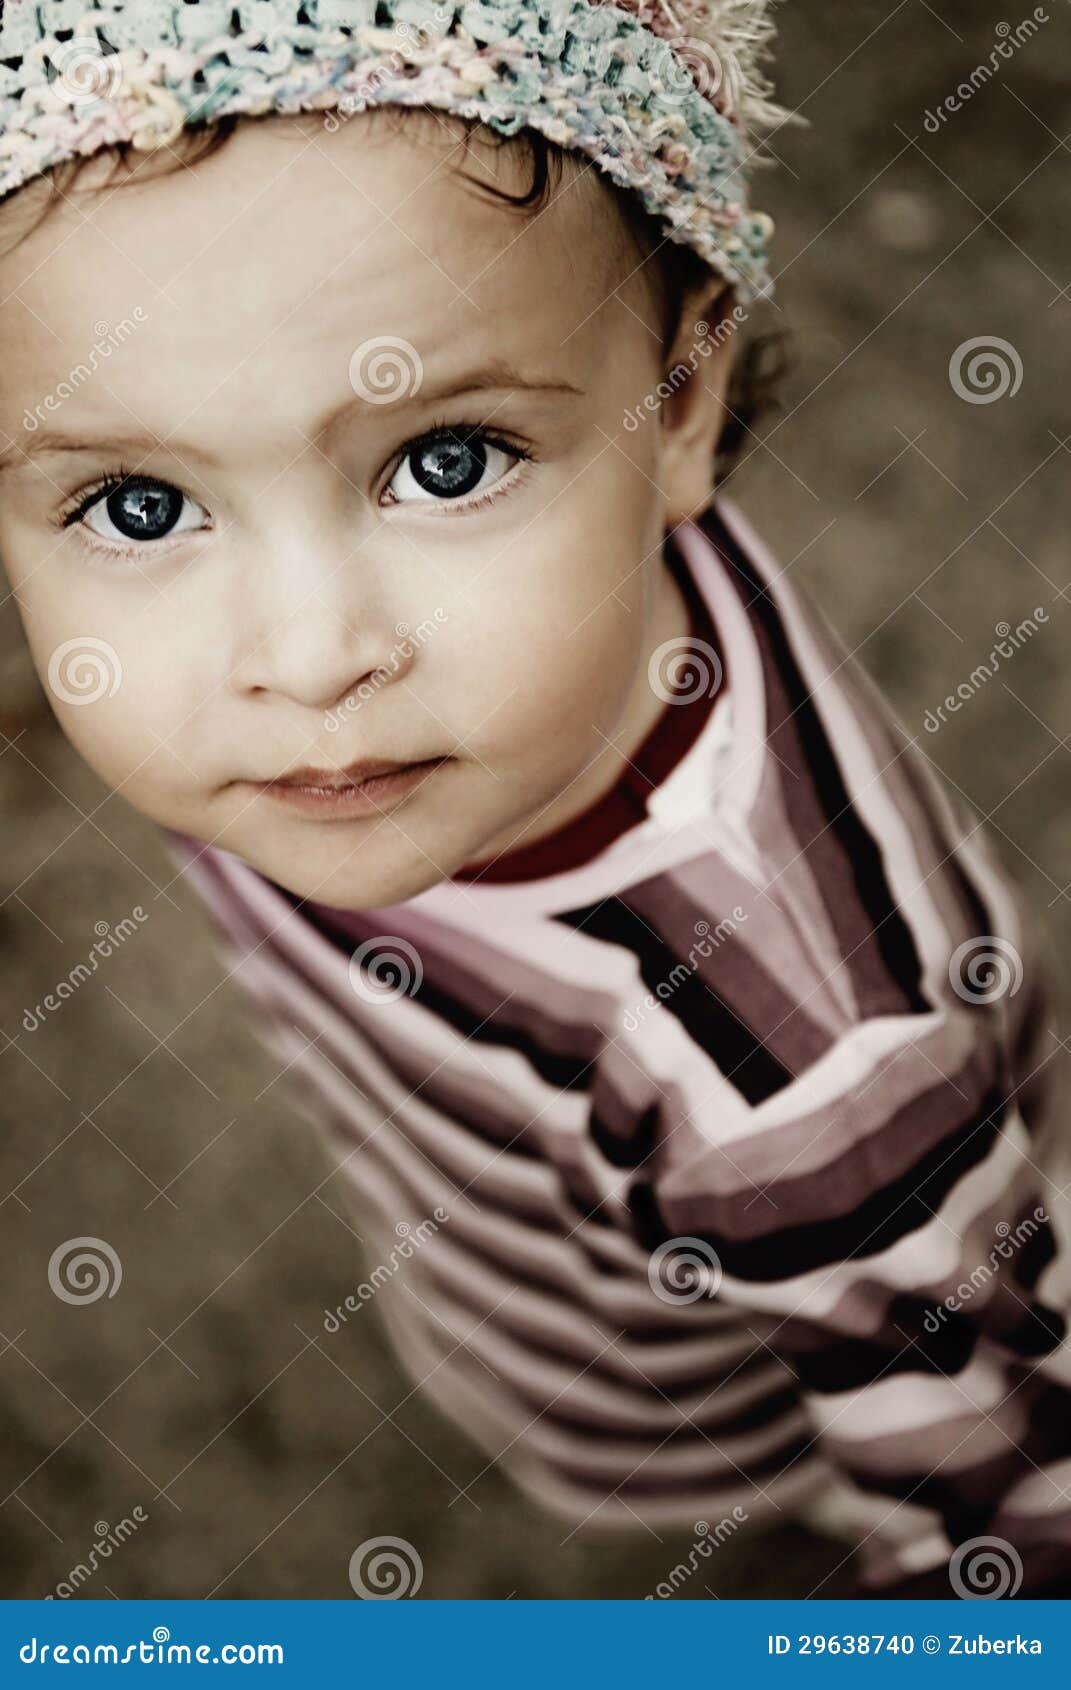 亚裔无辜的孩子 库存图片. 图片 包括有 婴孩, 相当, 童年, 红色, 逗人喜爱, 眼睛, 五颜六色, 衬衣 - 31320159